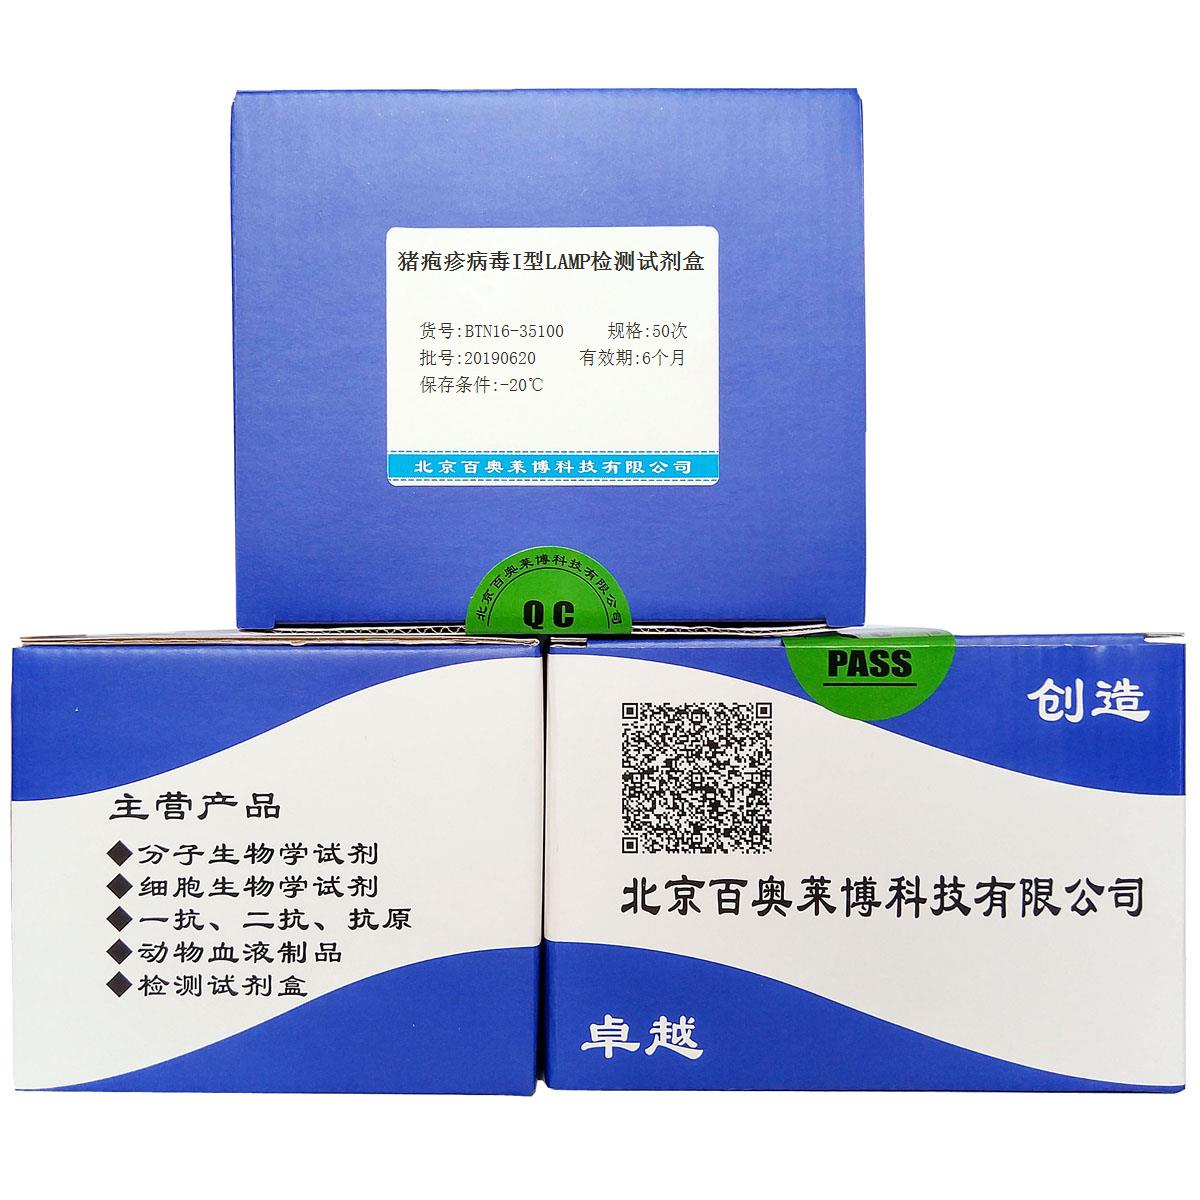 猪疱疹病毒I型LAMP检测试剂盒优惠促销